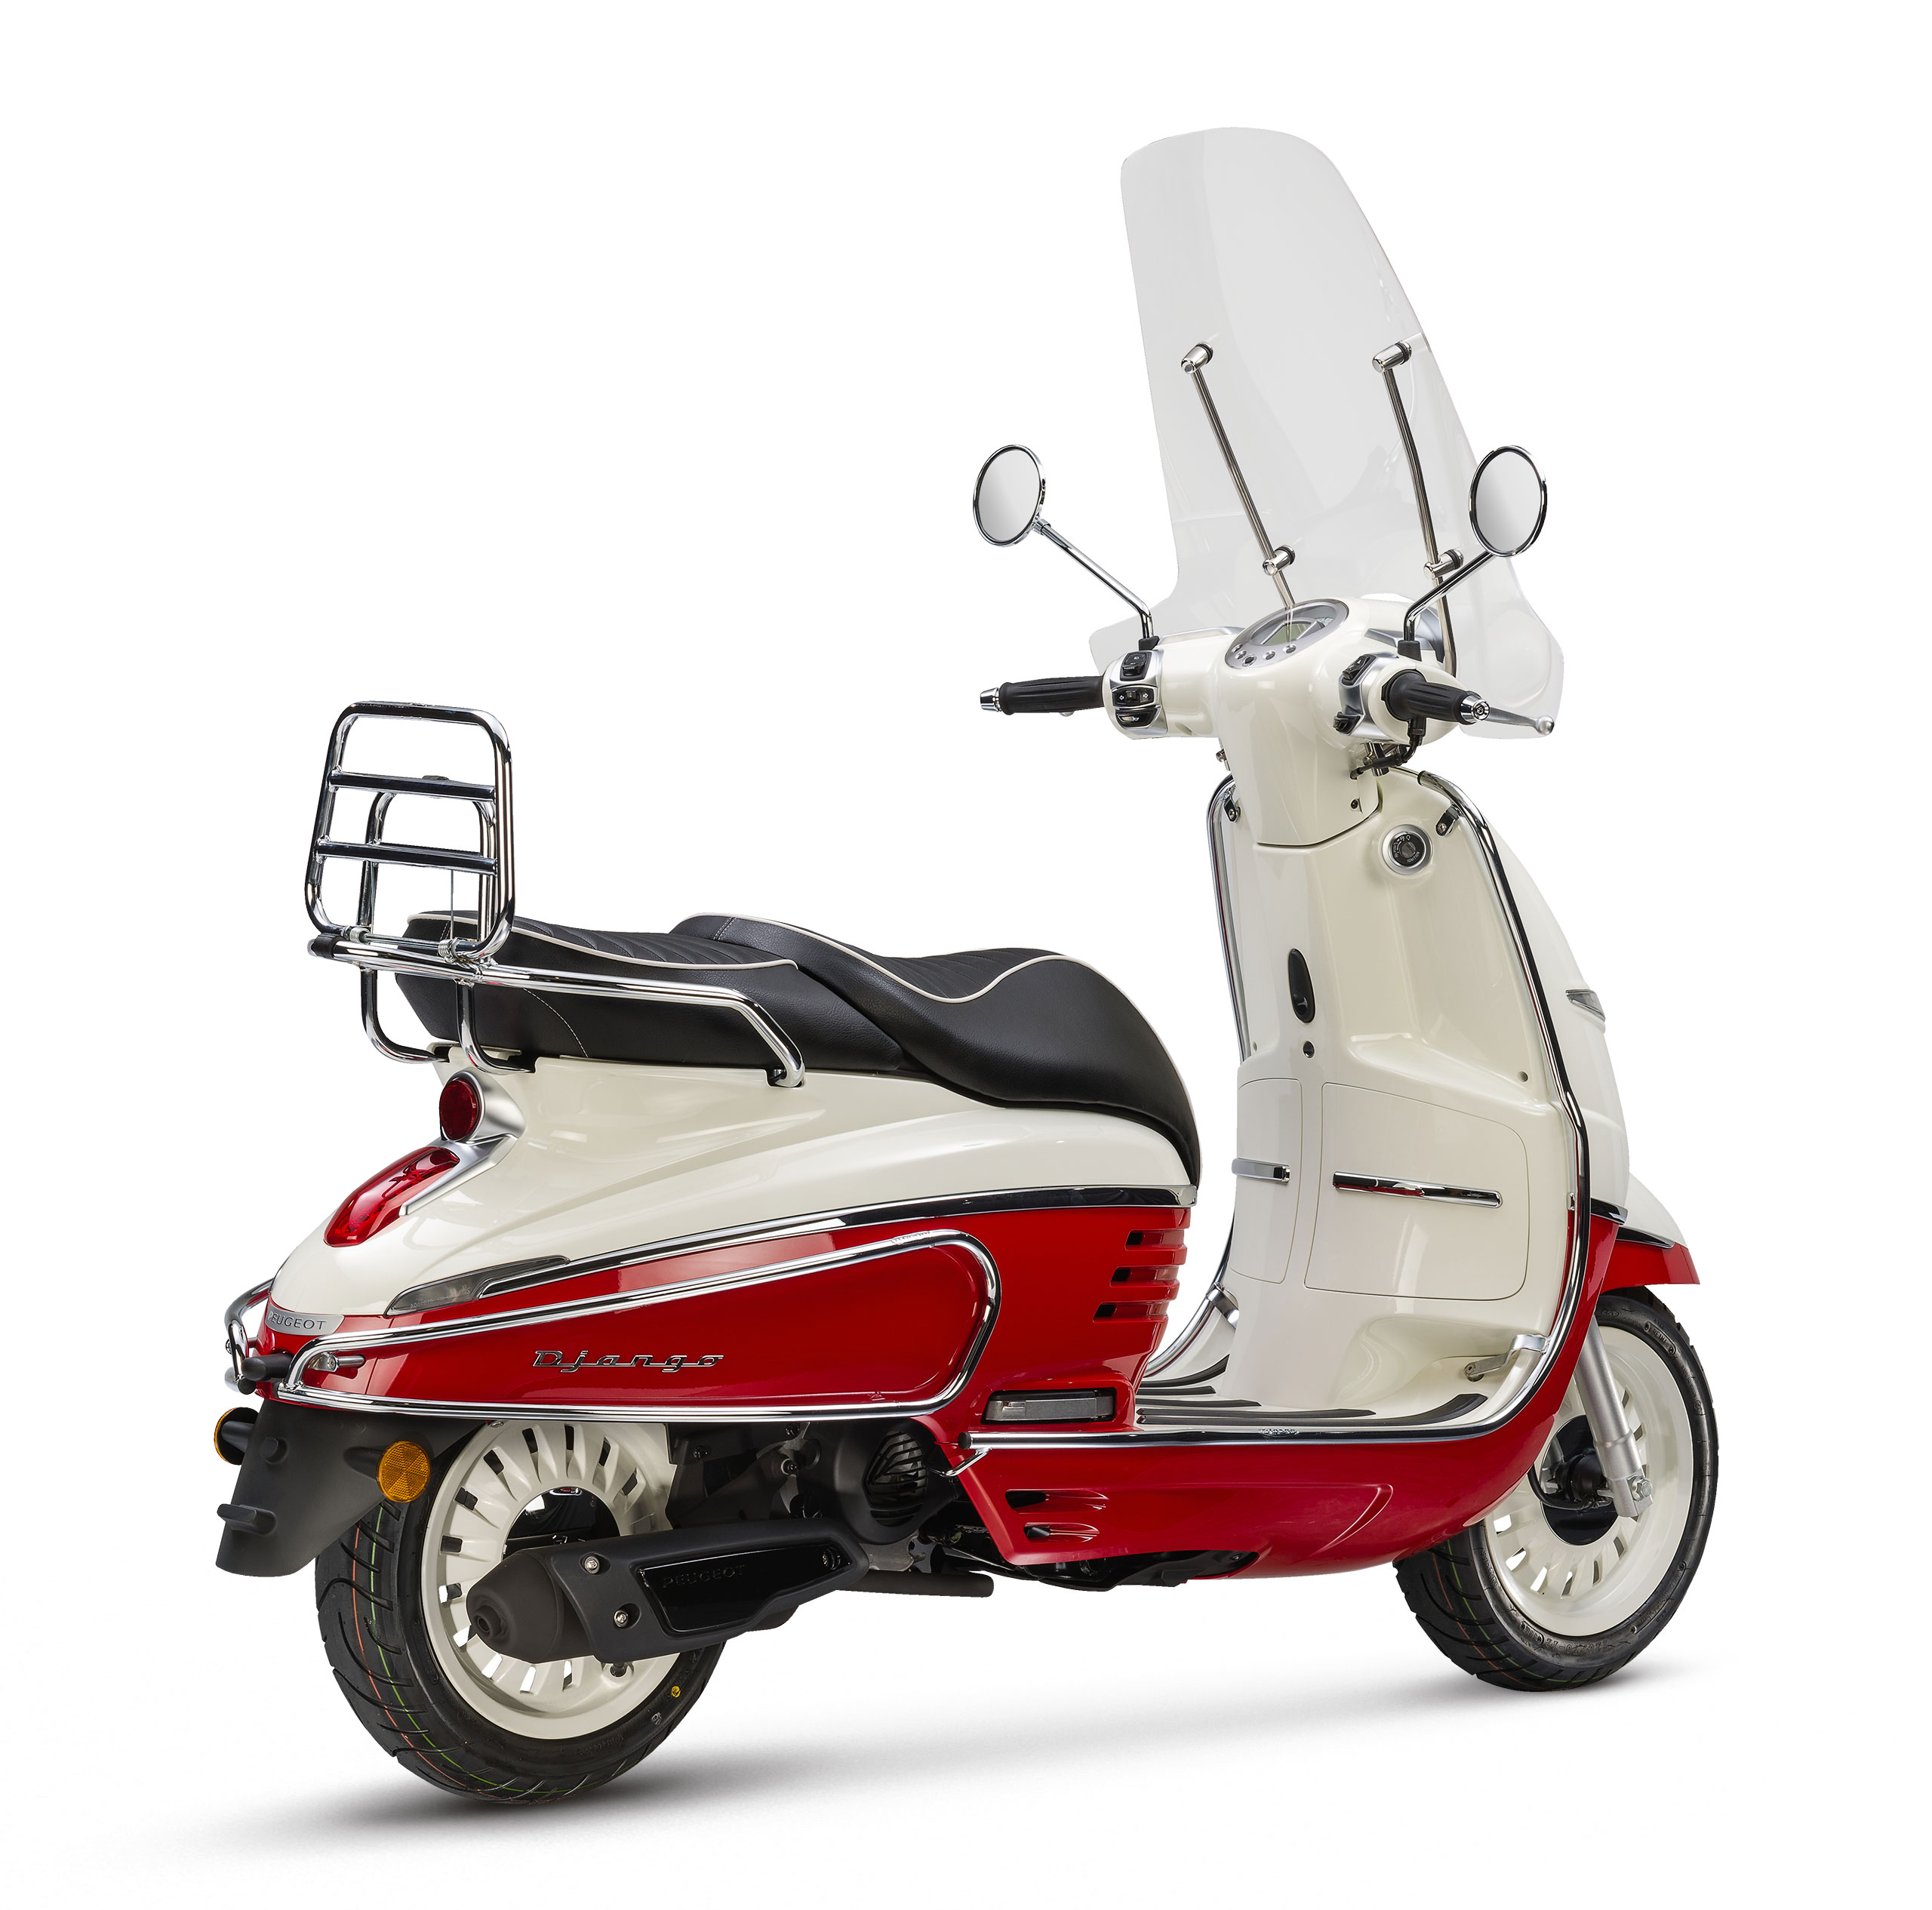 Peugeot Django Premium Milky White Red scooter kopen bij Central Scooters